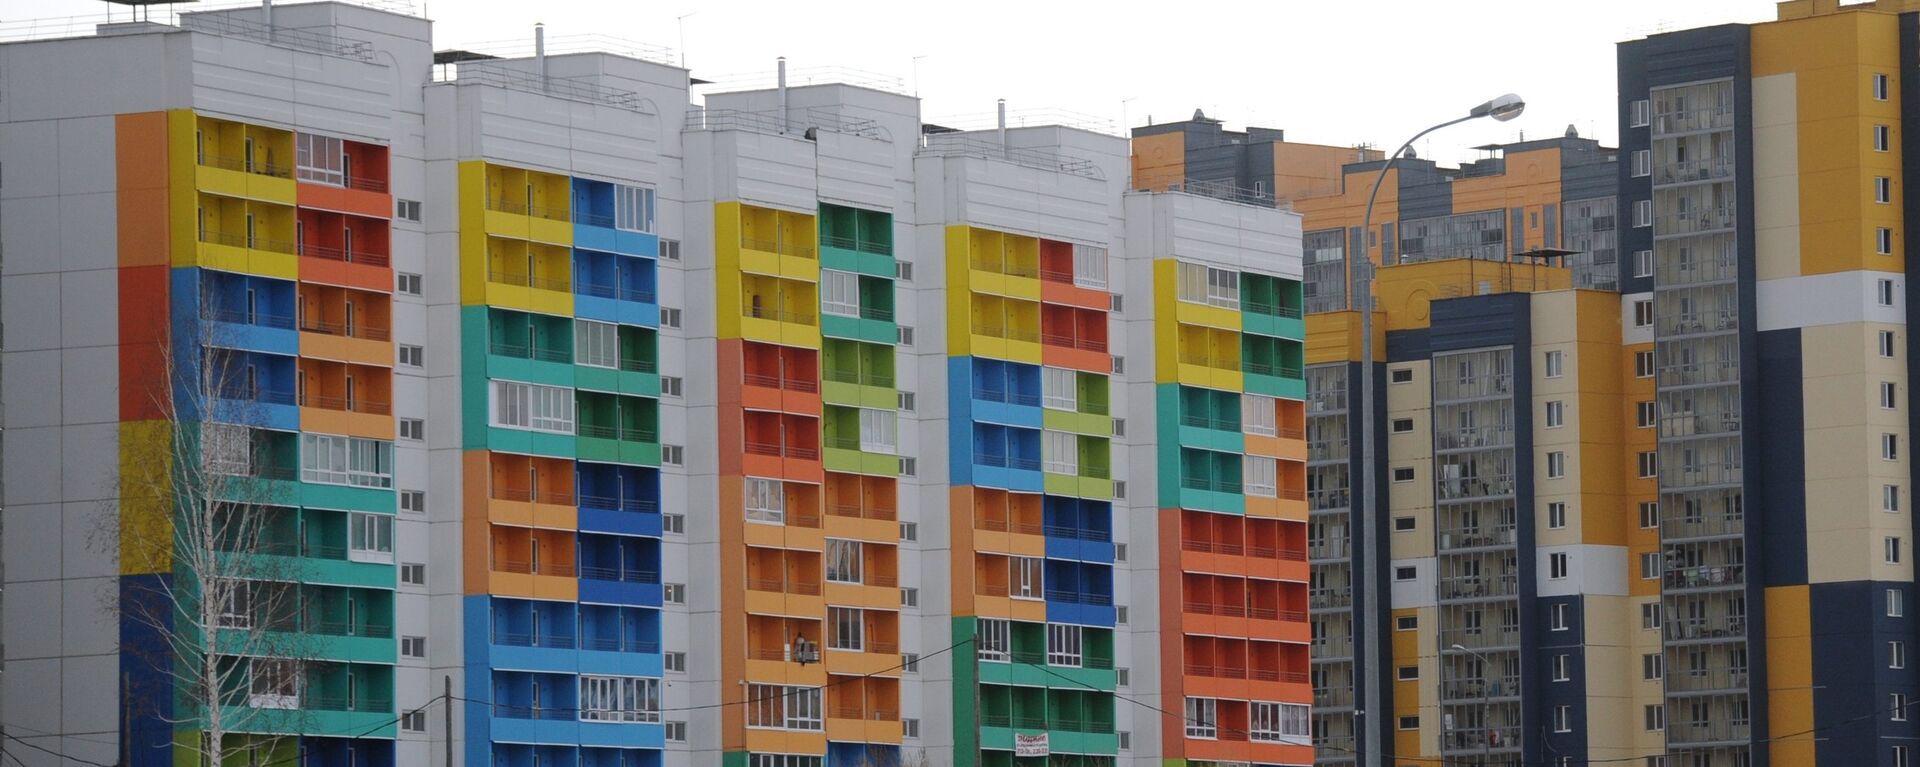 Многоэтажные дома с разноцветным фасадом - Sputnik Узбекистан, 1920, 20.05.2020